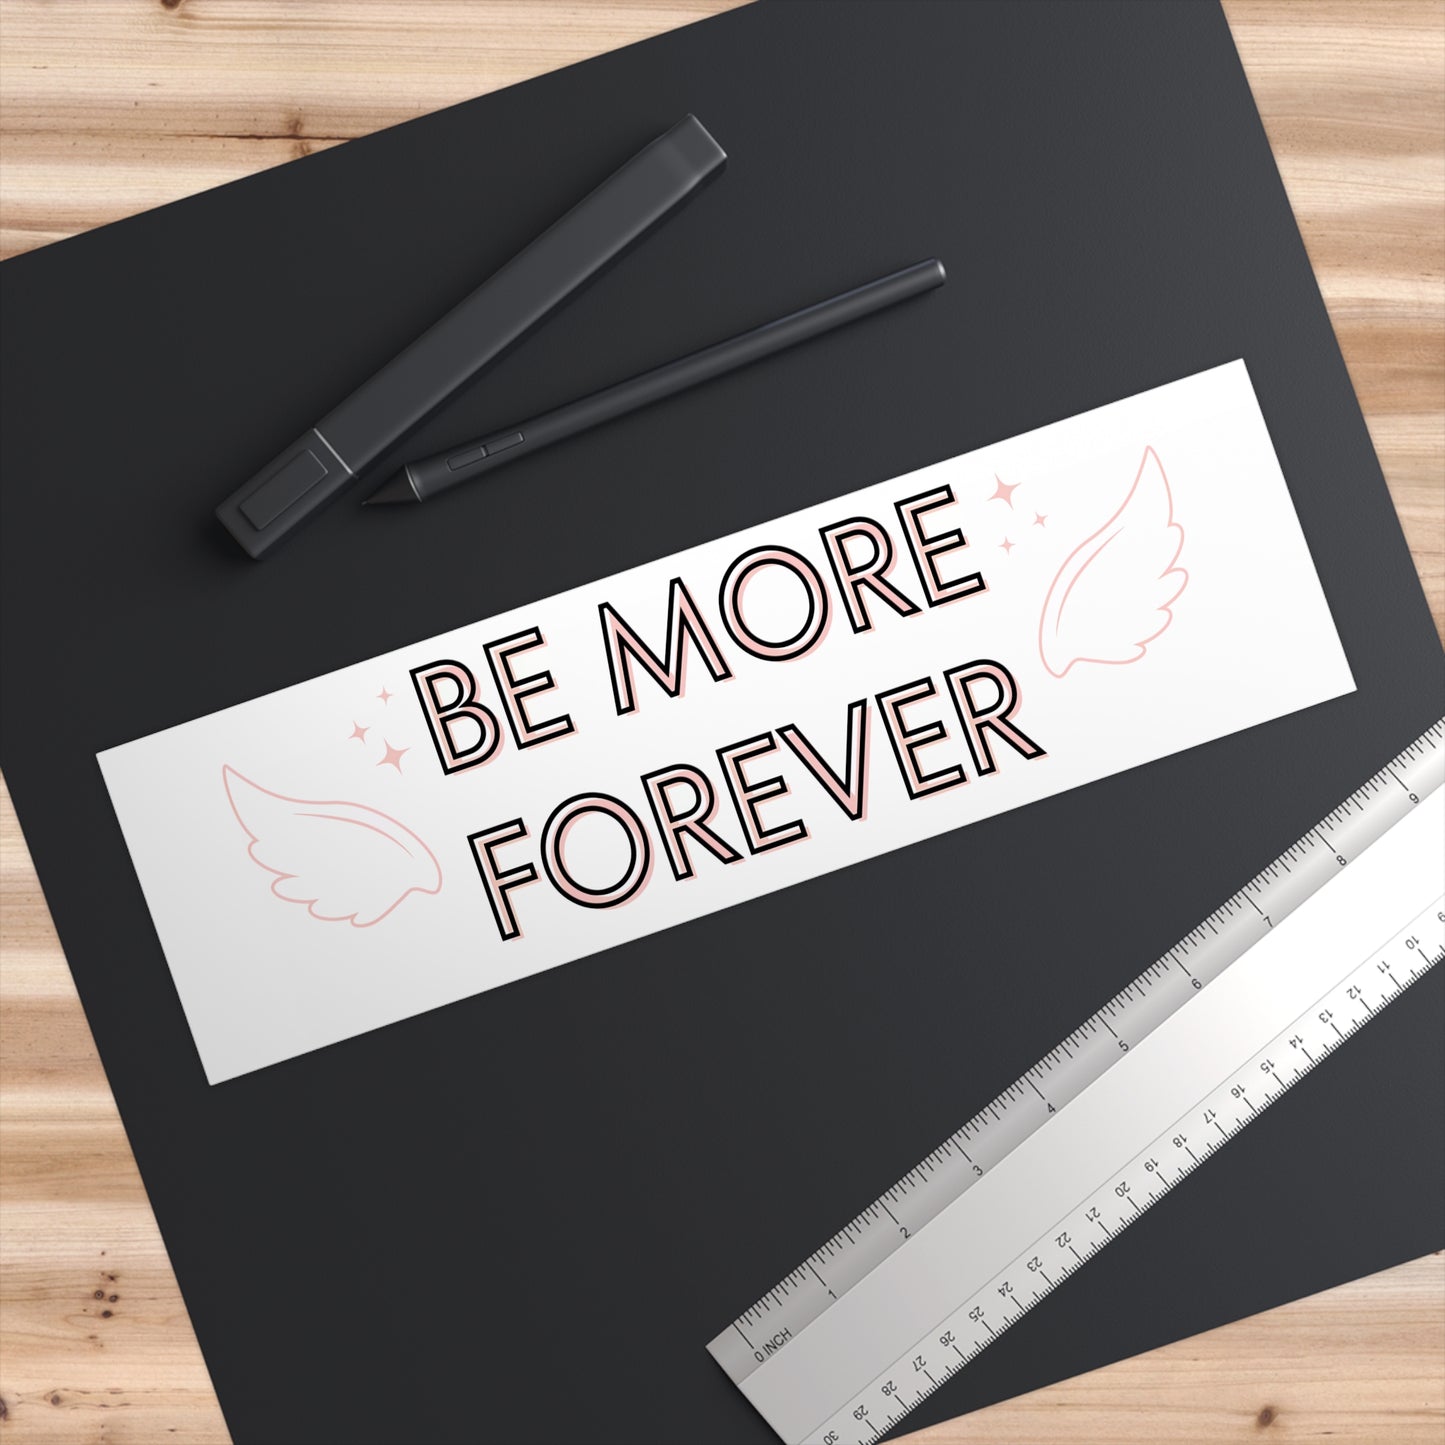 Be More Forever - Cute Bumper Sticker